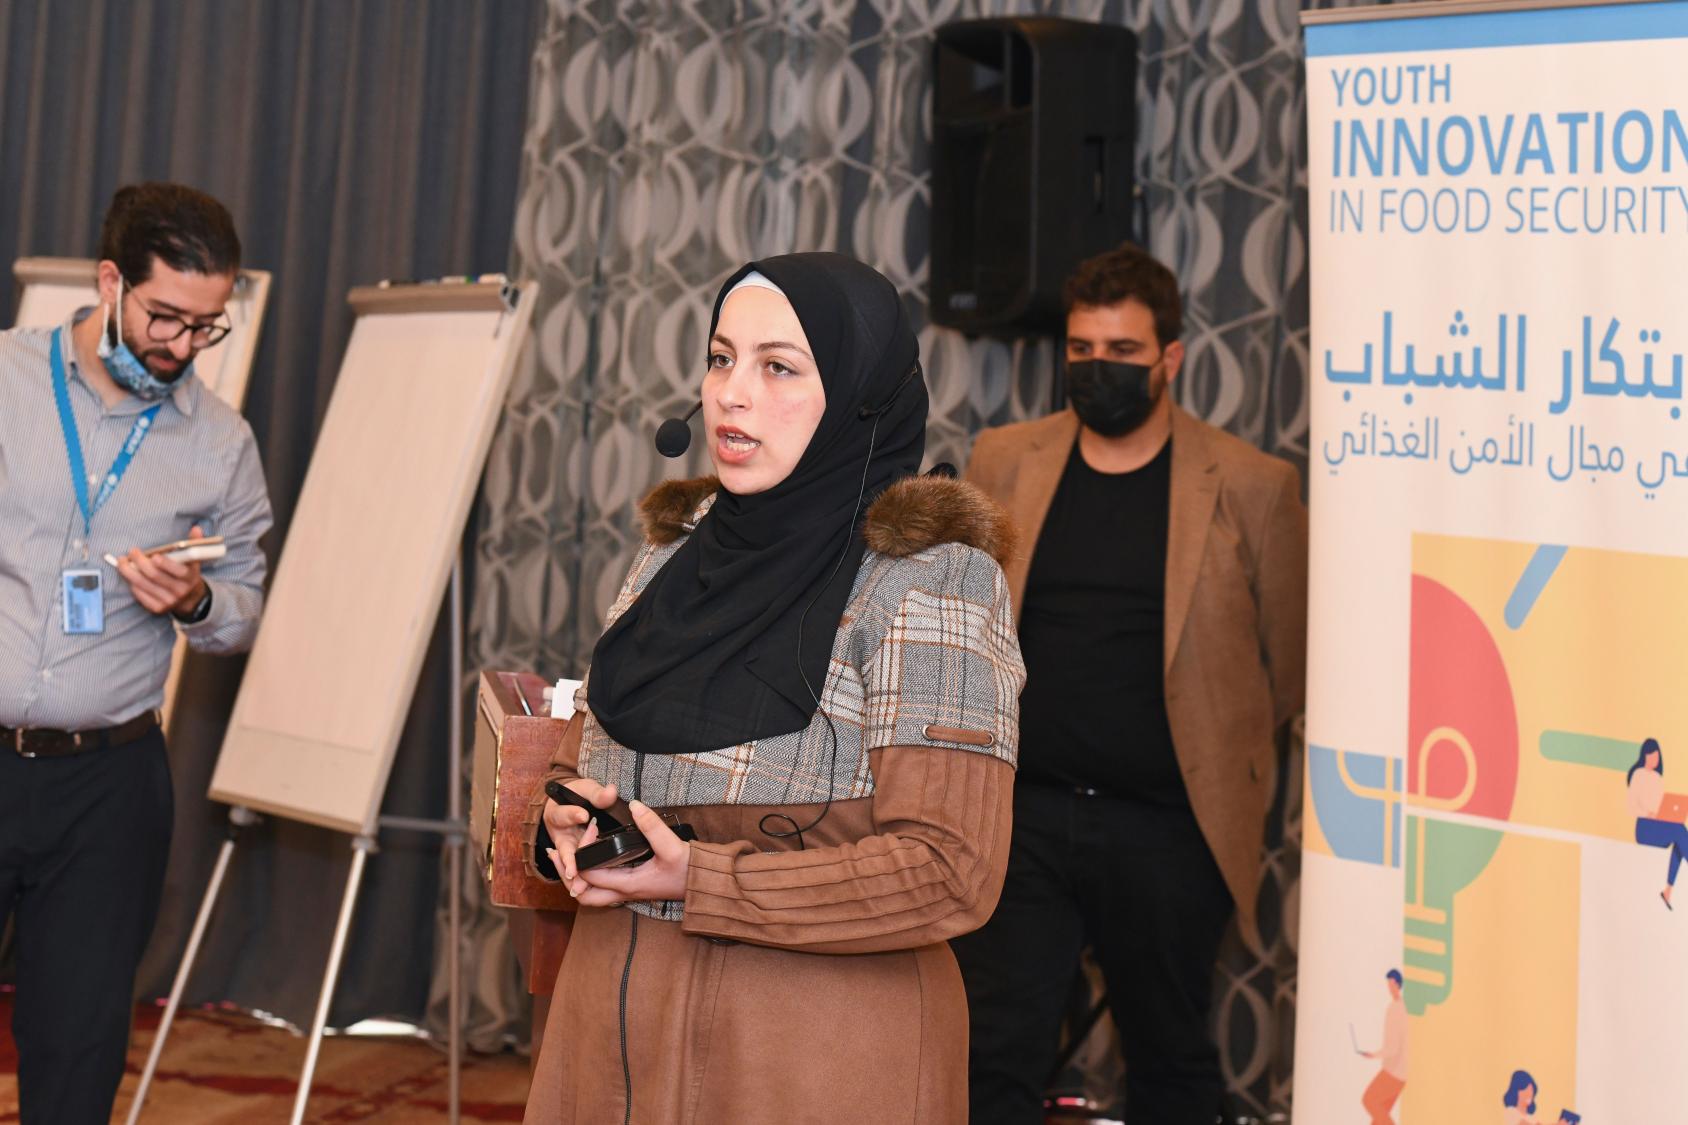 آية كريك، مشاركة في حدث ابتكار الشباب في مجال الأمن الغذائي الذي نظم من قبل اليونيسف وبرنامج الأغذية العالمي في الأردن.